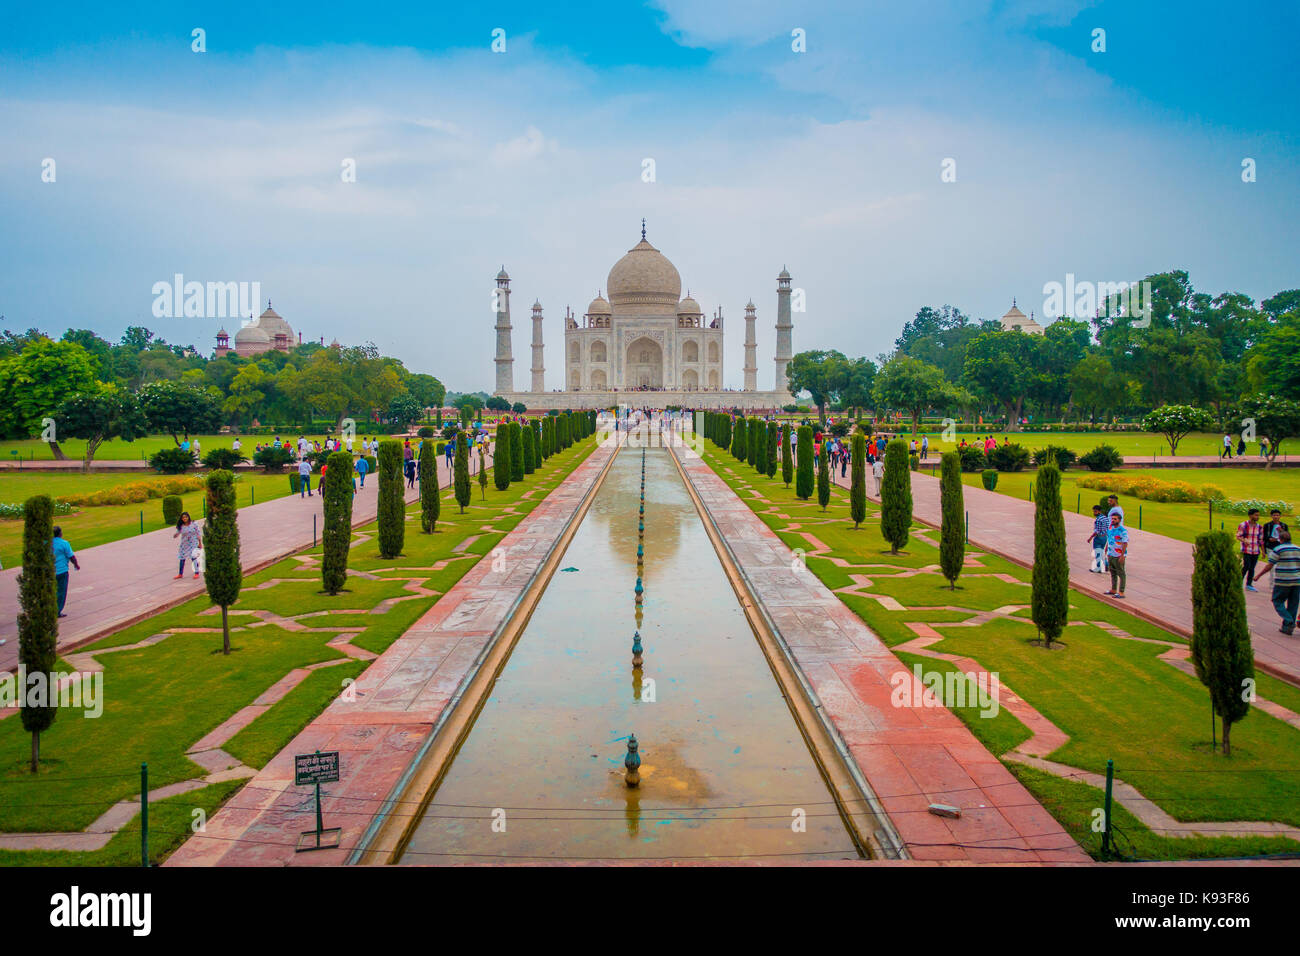 Agra, Indien - 20. September 2017: Das Taj Mahal ist ein Elfenbein - weißer Marmor mausoleum am südlichen Ufer des Yamuna Flusses in der indischen Stadt Agra, Uttar Pradesh Stockfoto